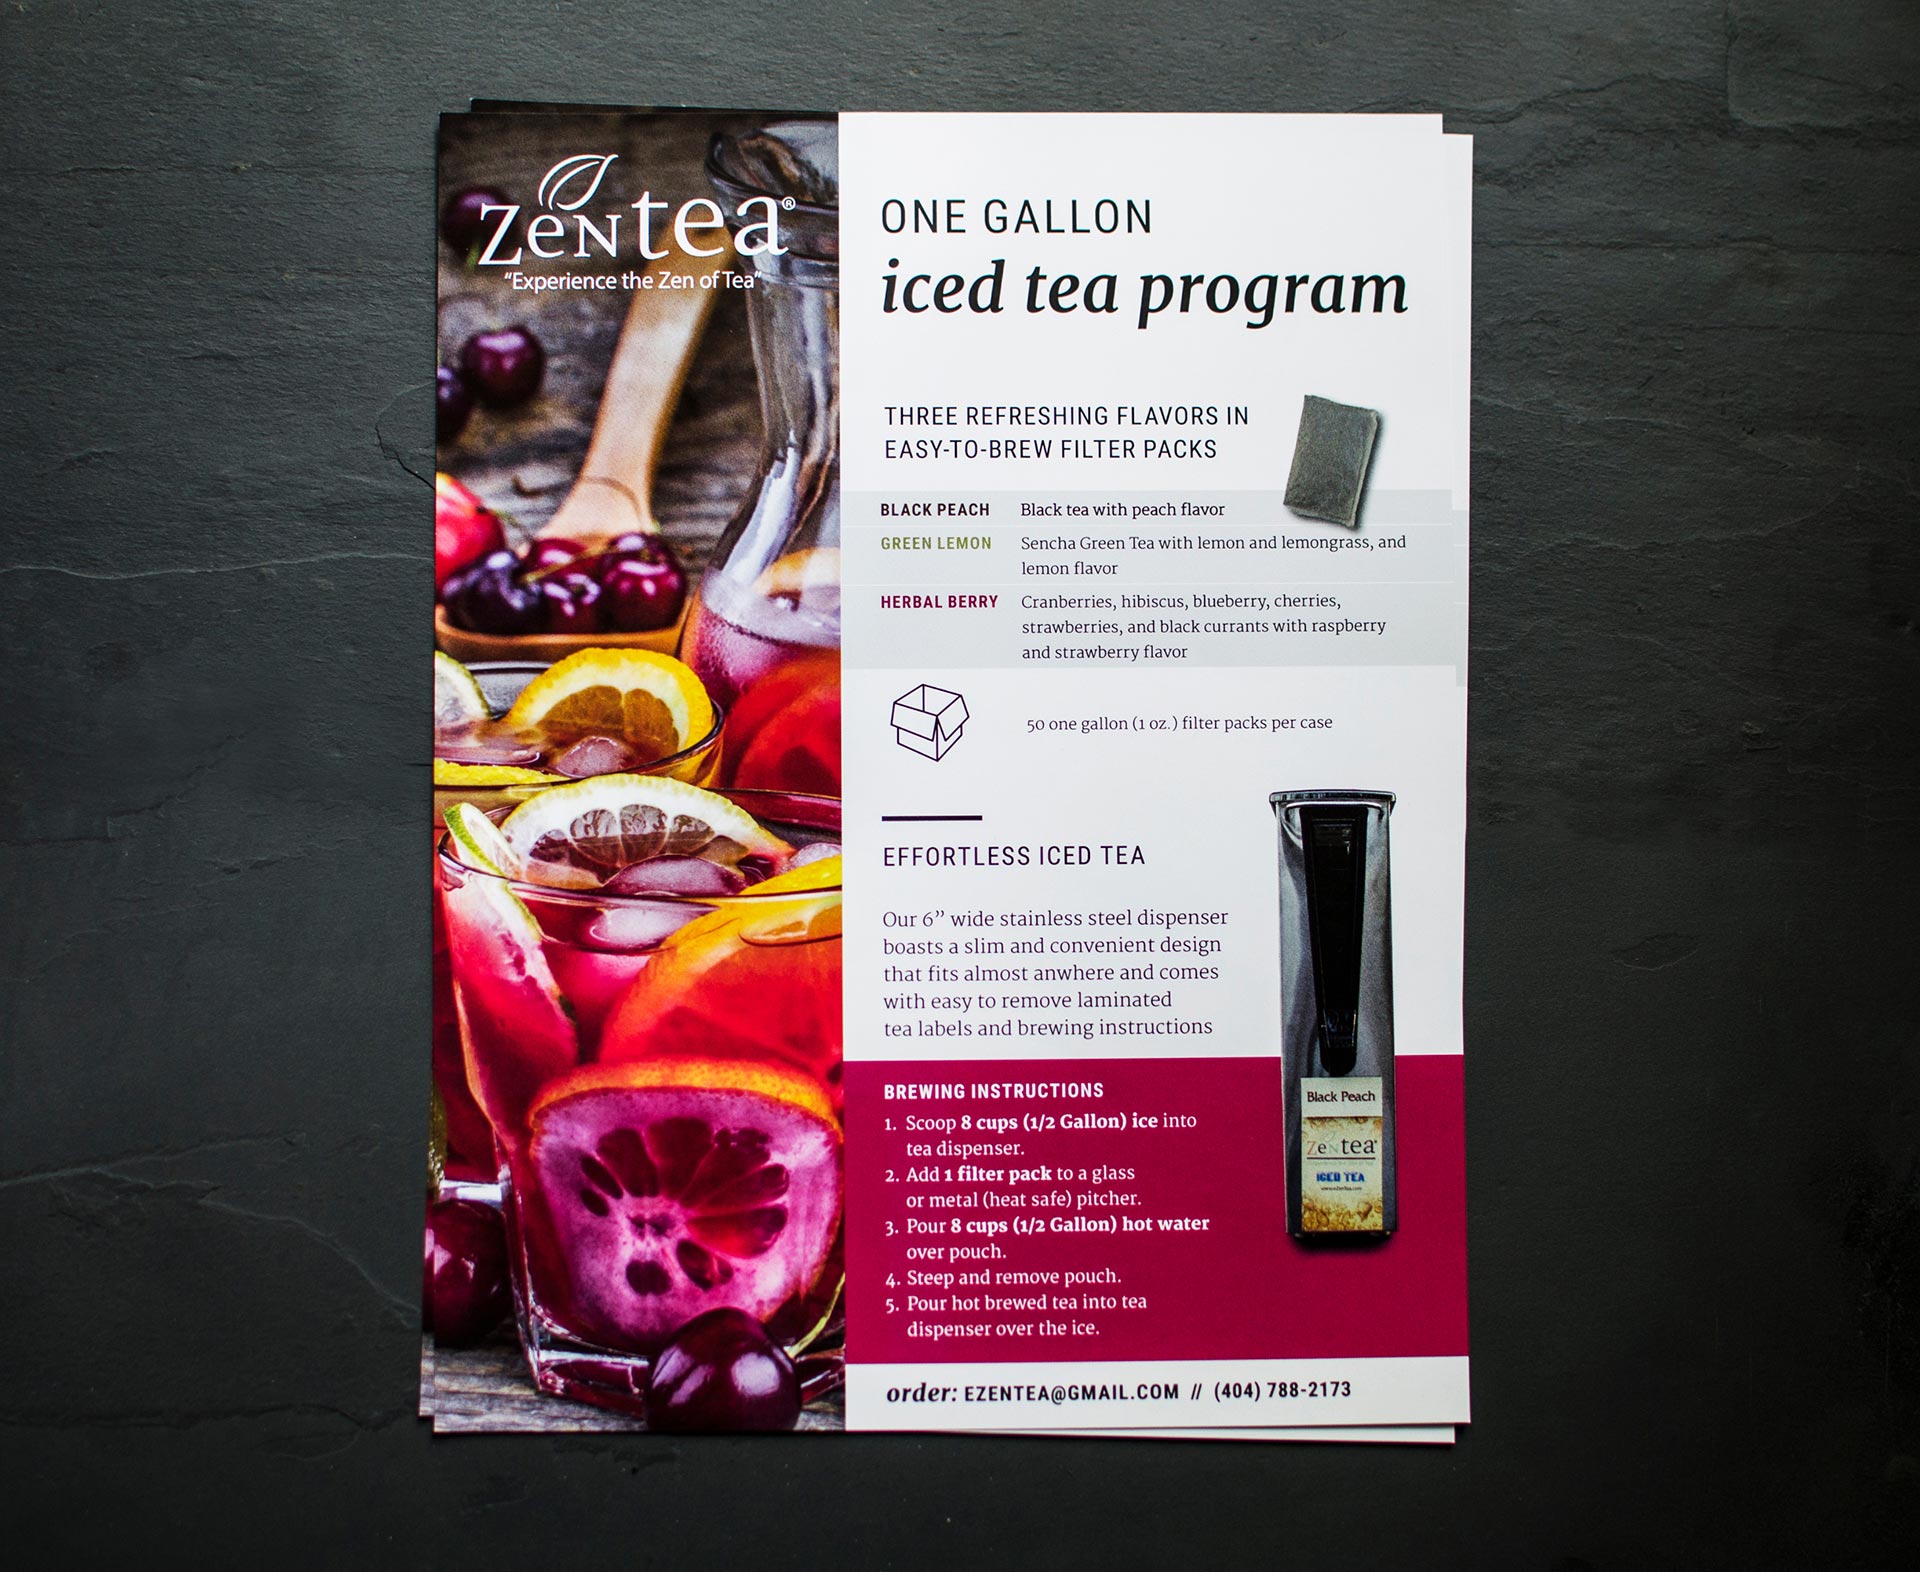 A stack of flyers promoting ZenTea's iced tea program.